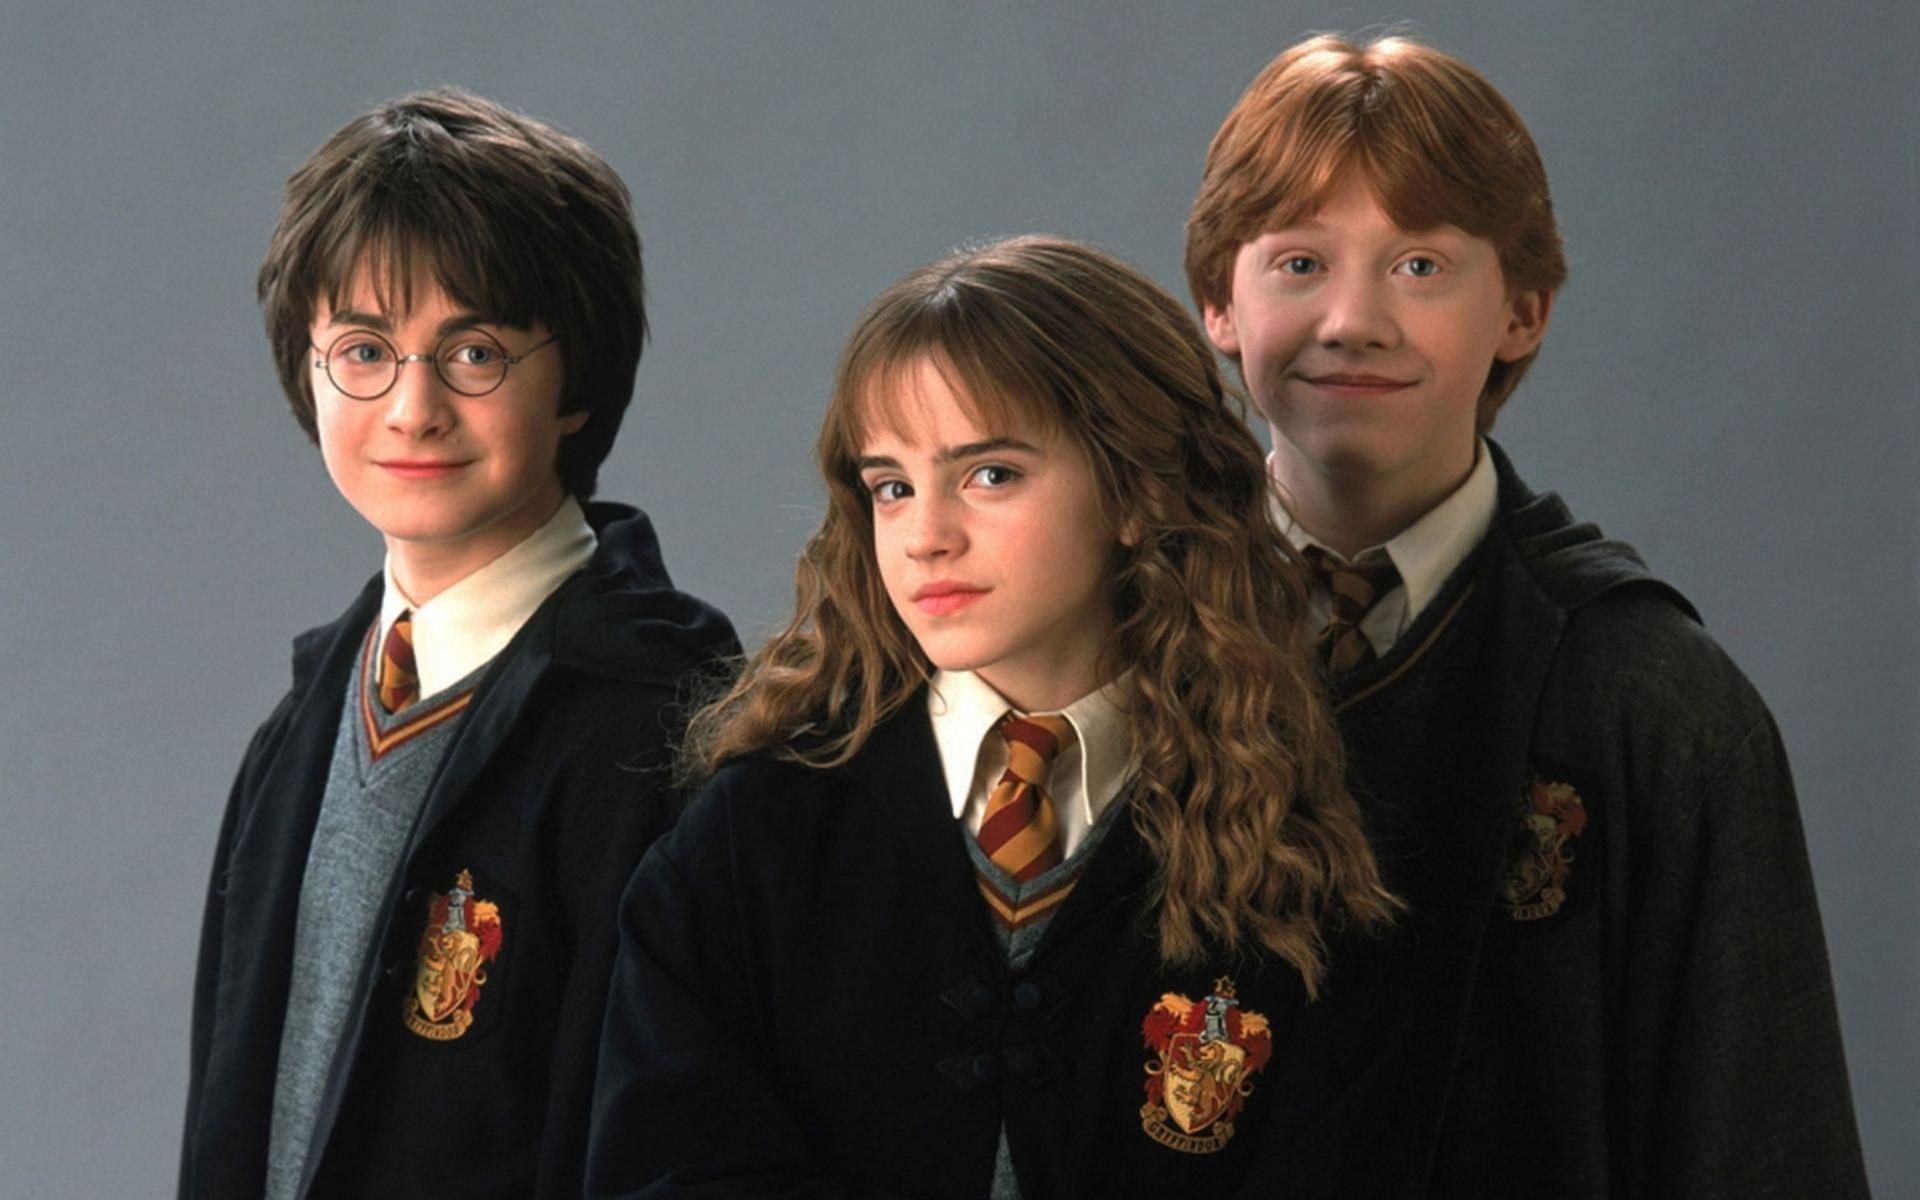 Daniel Radcliffe, Emma Watson y Rupert Grint en una de las primeras imágenes promocionales de Harry Potter.